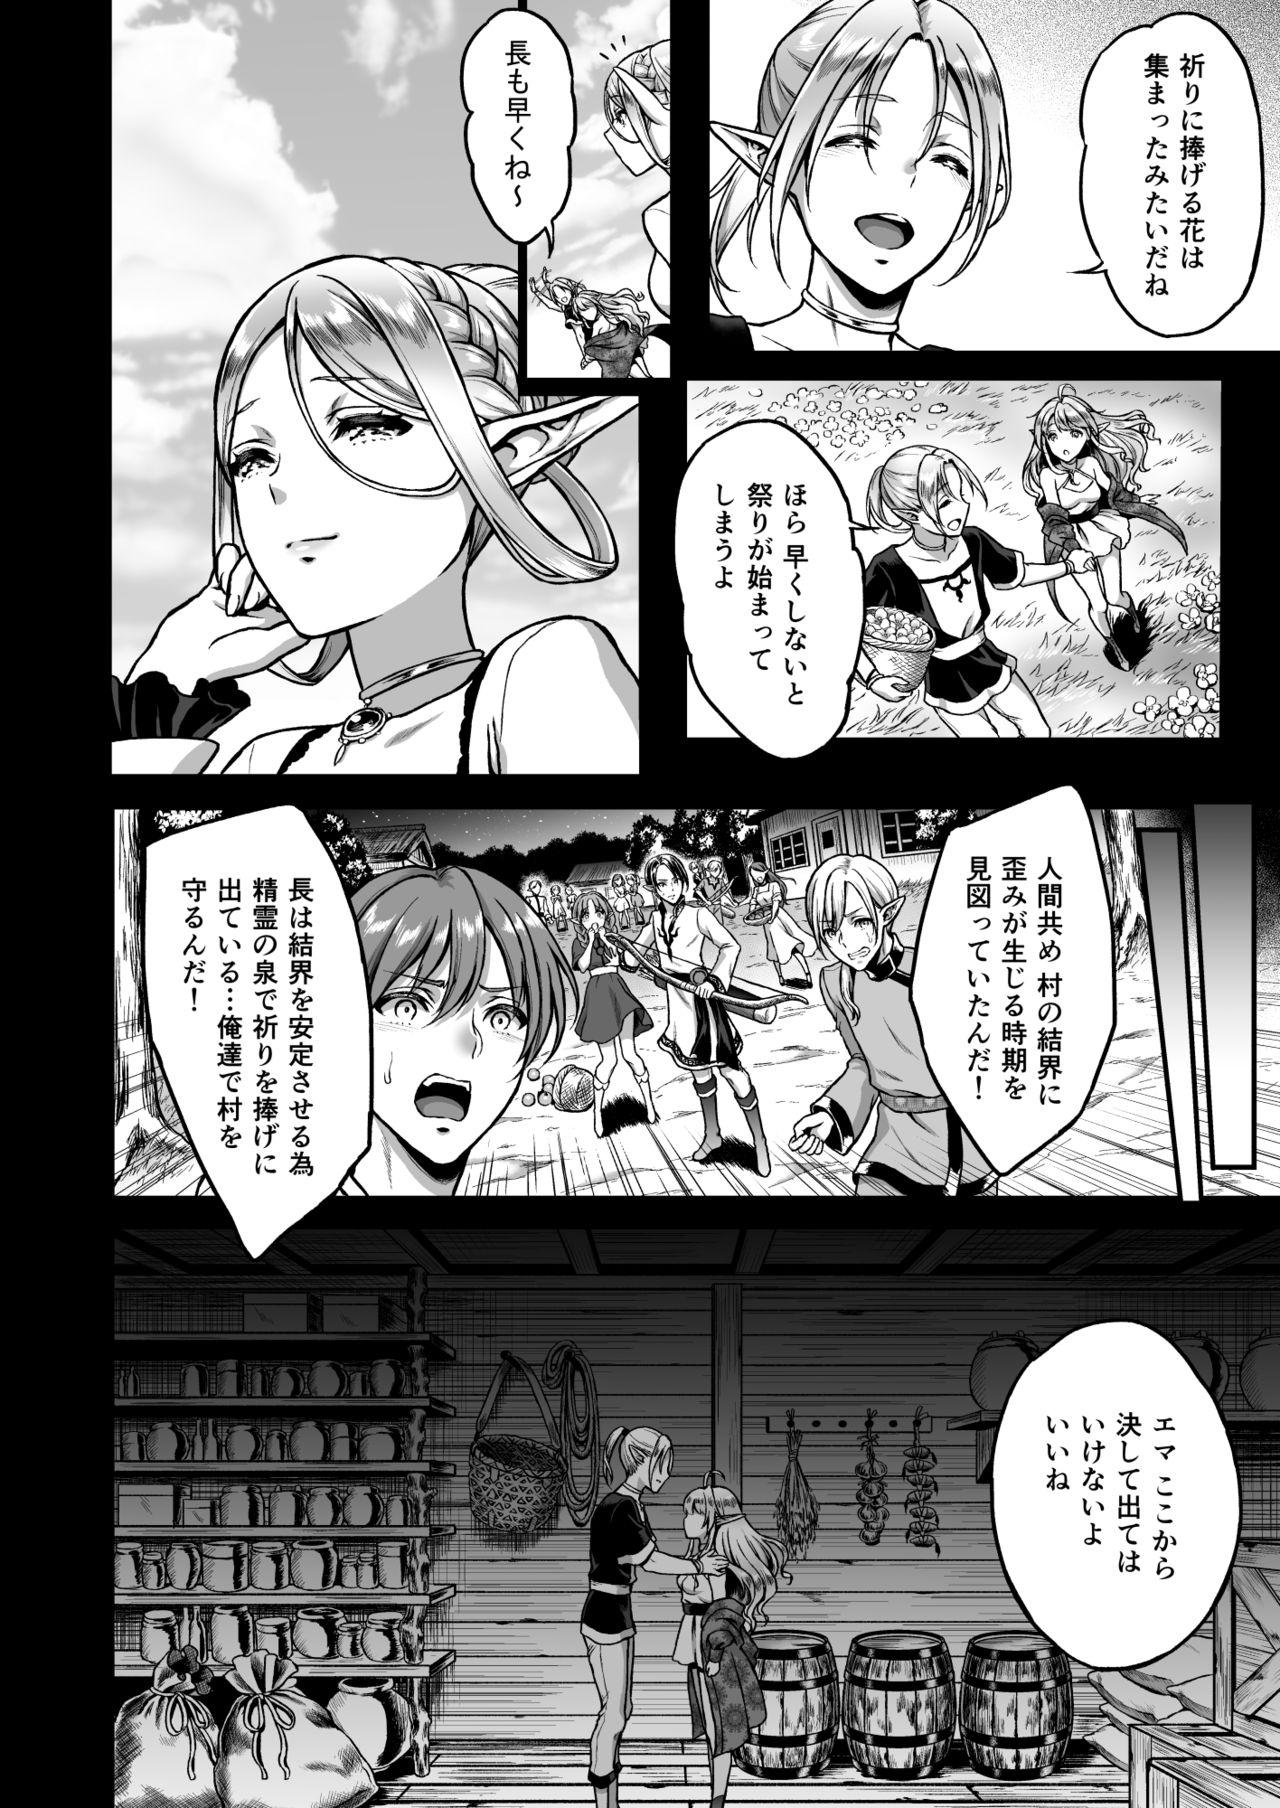 Spreadeagle Tasogare no Shou Elf 2 - The story of Emma's side - Original Nuru - Page 4